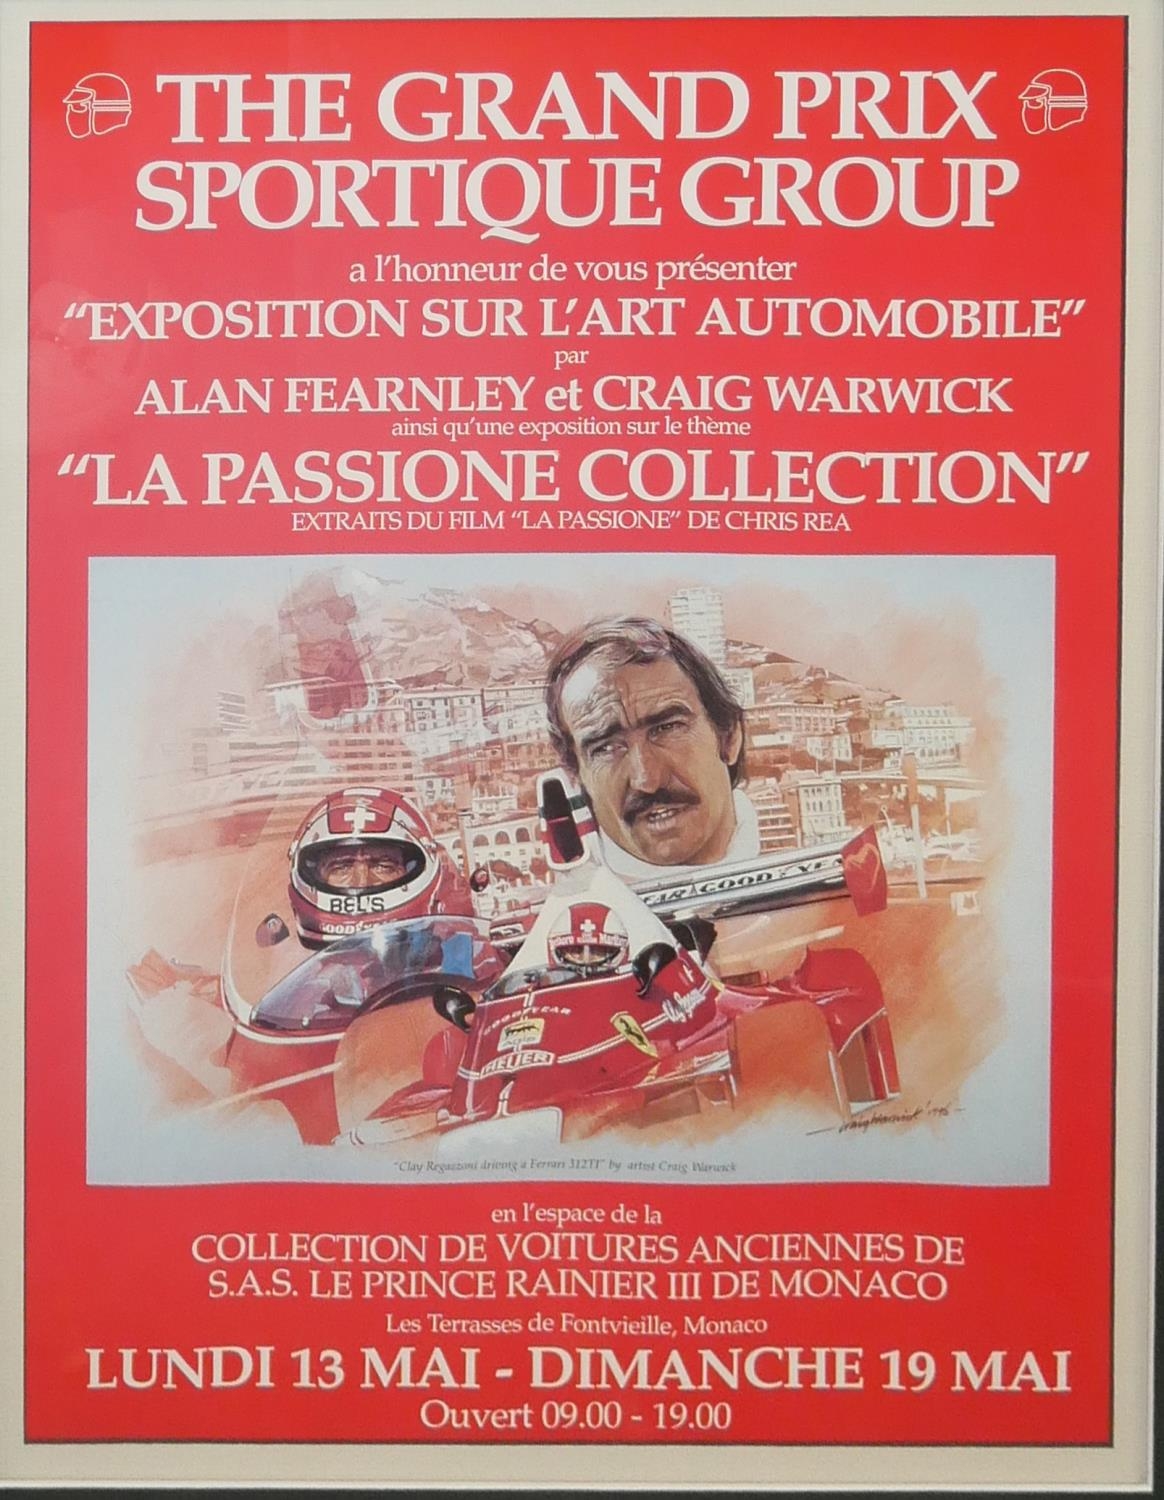 CRAIG WARWICK, 1948 - 2015, MONACO, 1996 FRAMED POSTER Clay Regazzoni driving the Scuderia Ferrari